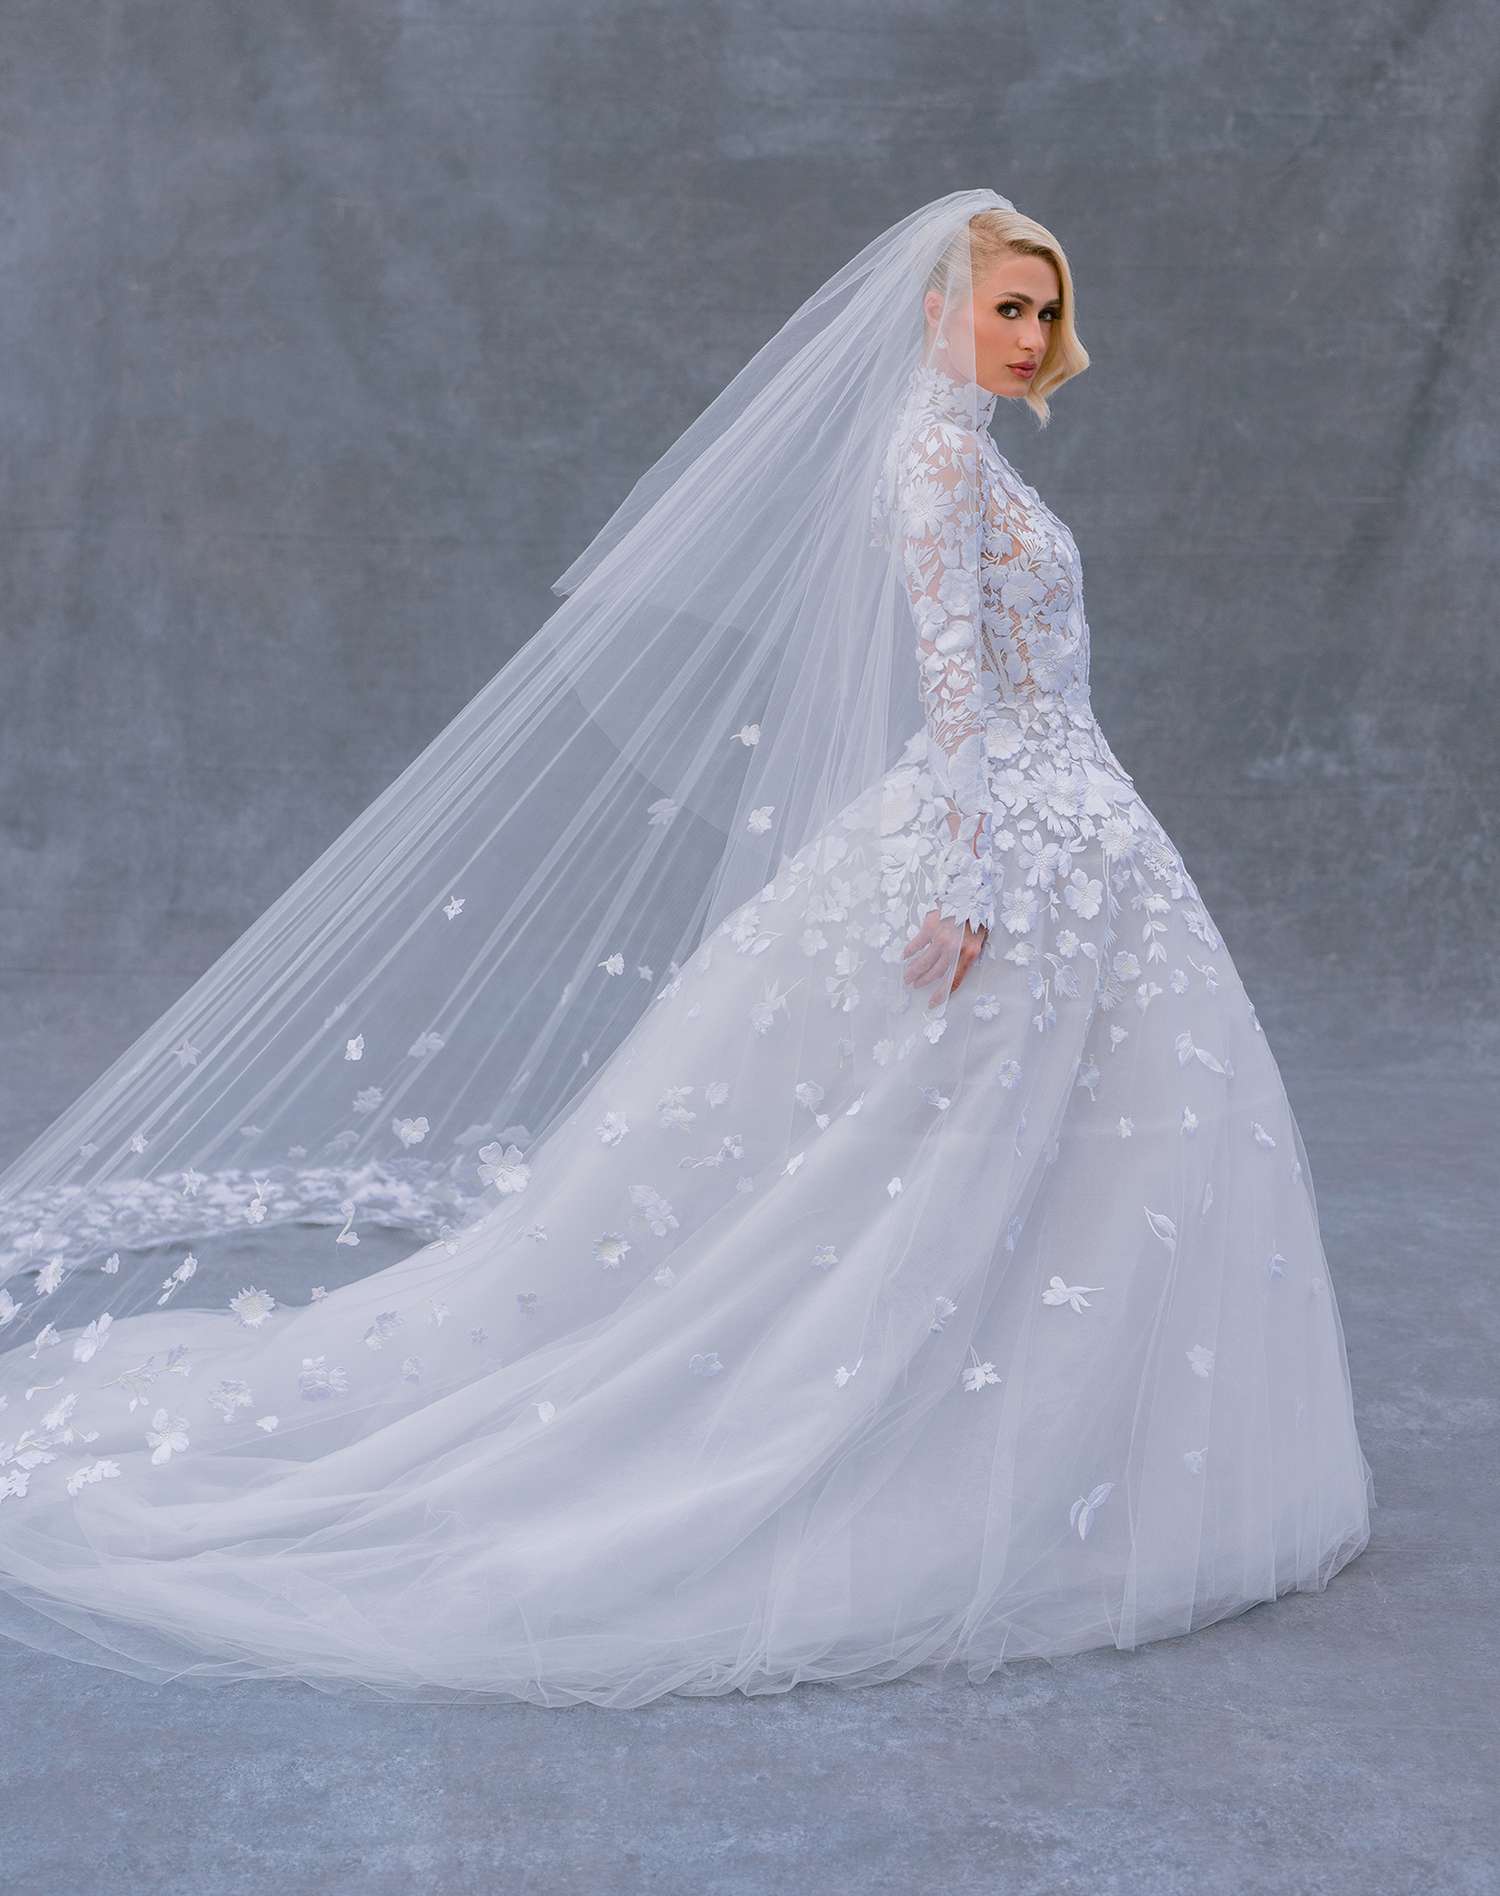 Tous les détails sur la robe de mariée de Paris Hilton (et les changements de tenue) pour les noces de Carter Reum